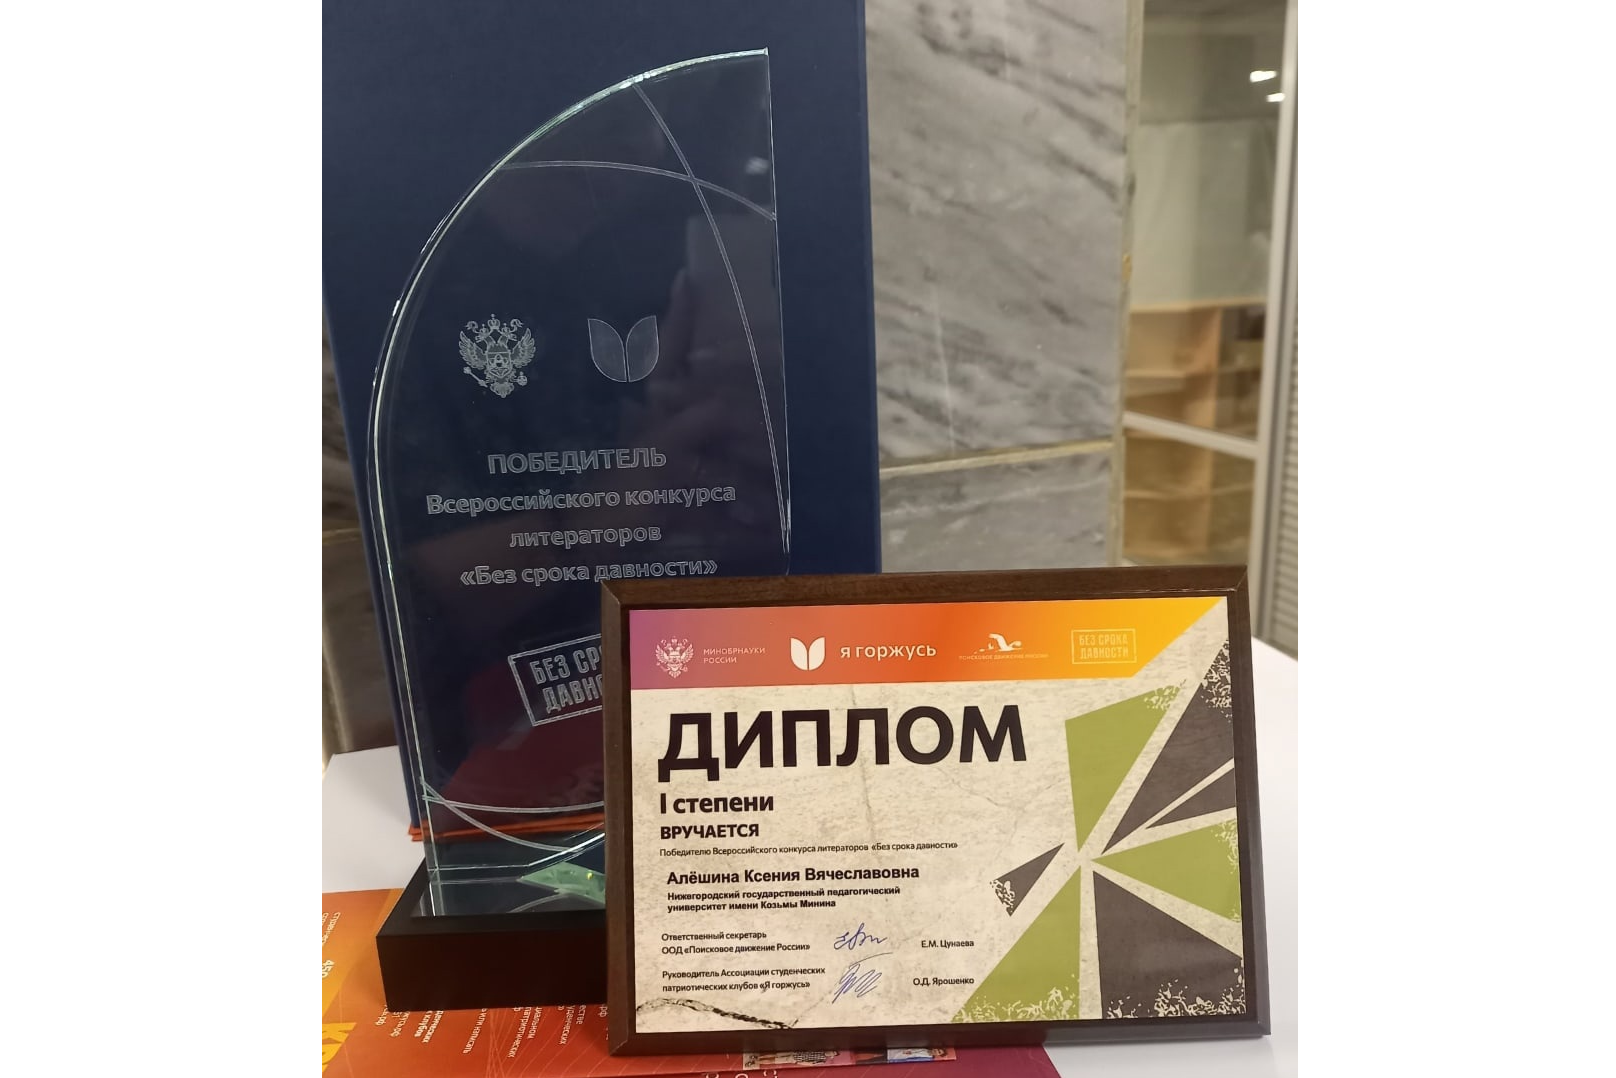 Студентка Мининского стала победителем всероссийского конкурса литераторов «Без срока давности»